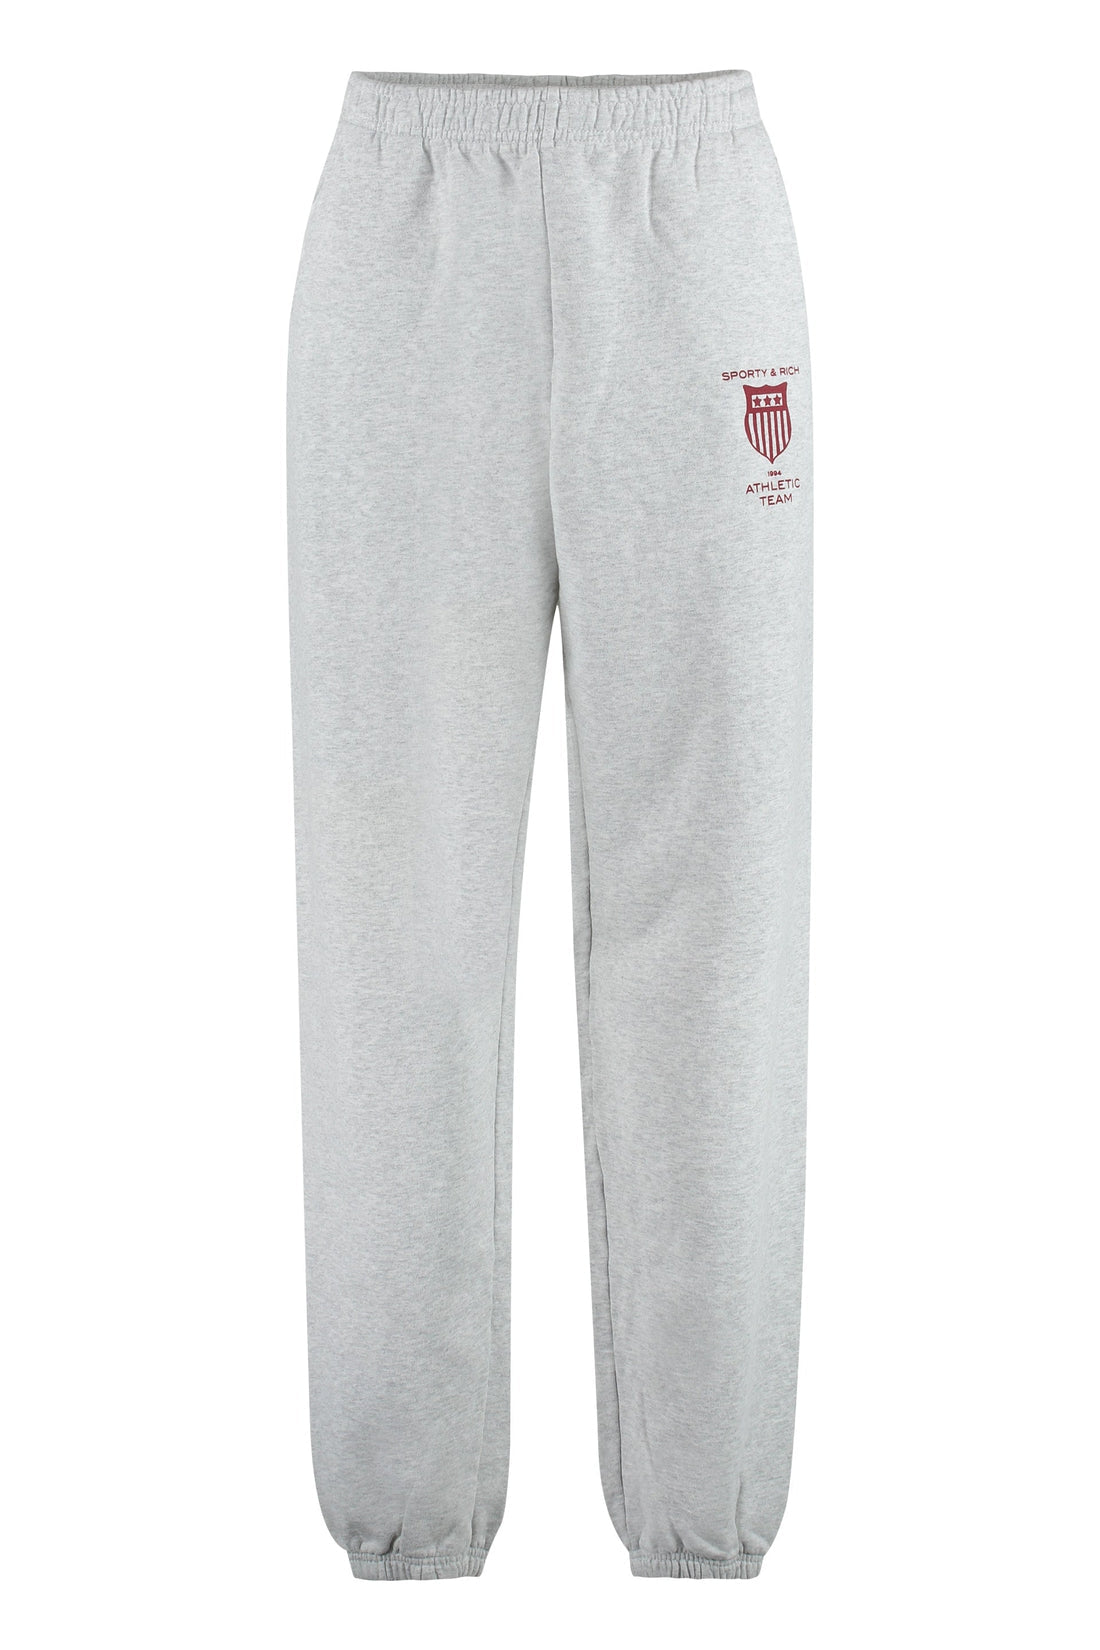 Спортивные брюки с логотипом Sporty & Rich, серый